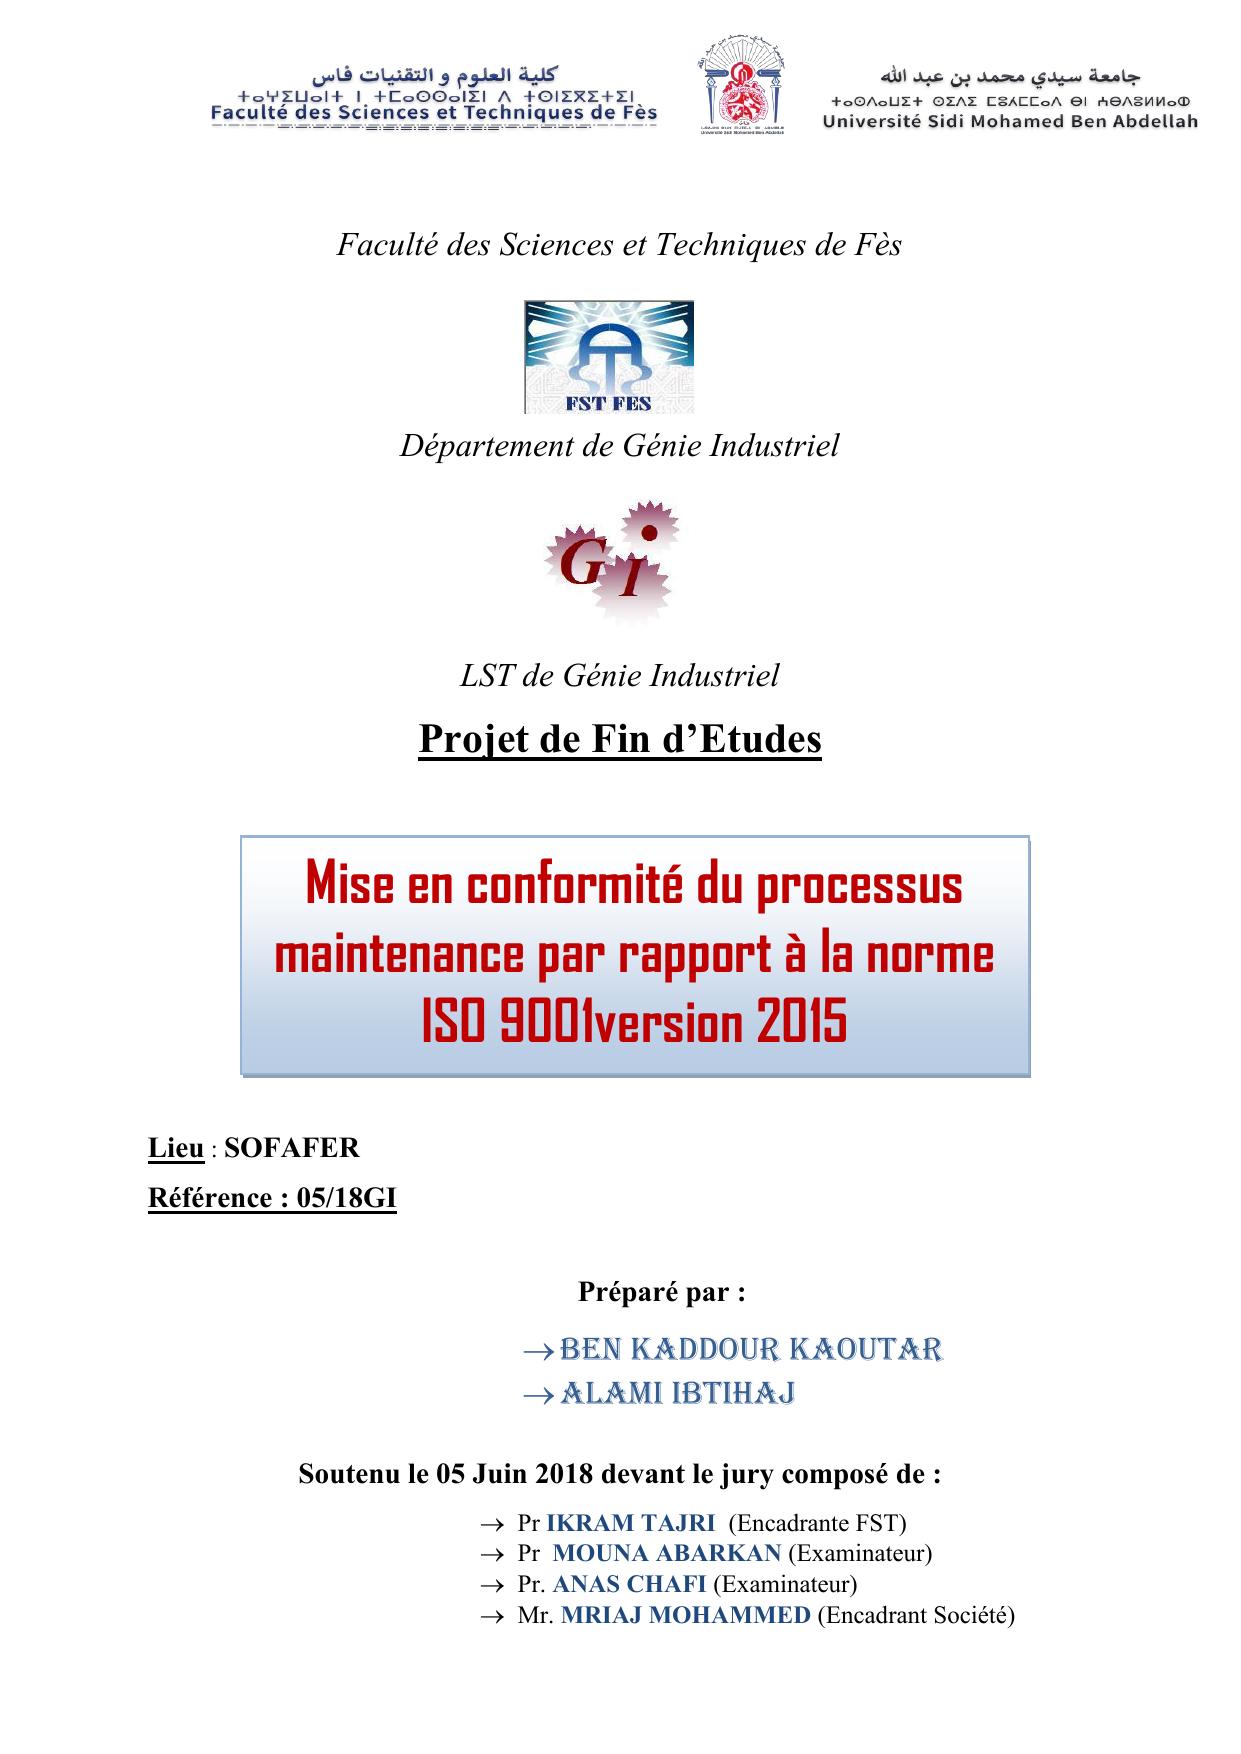 Mise en conformité du processus maintenance par rapport à la norme ISO 9001version 2015